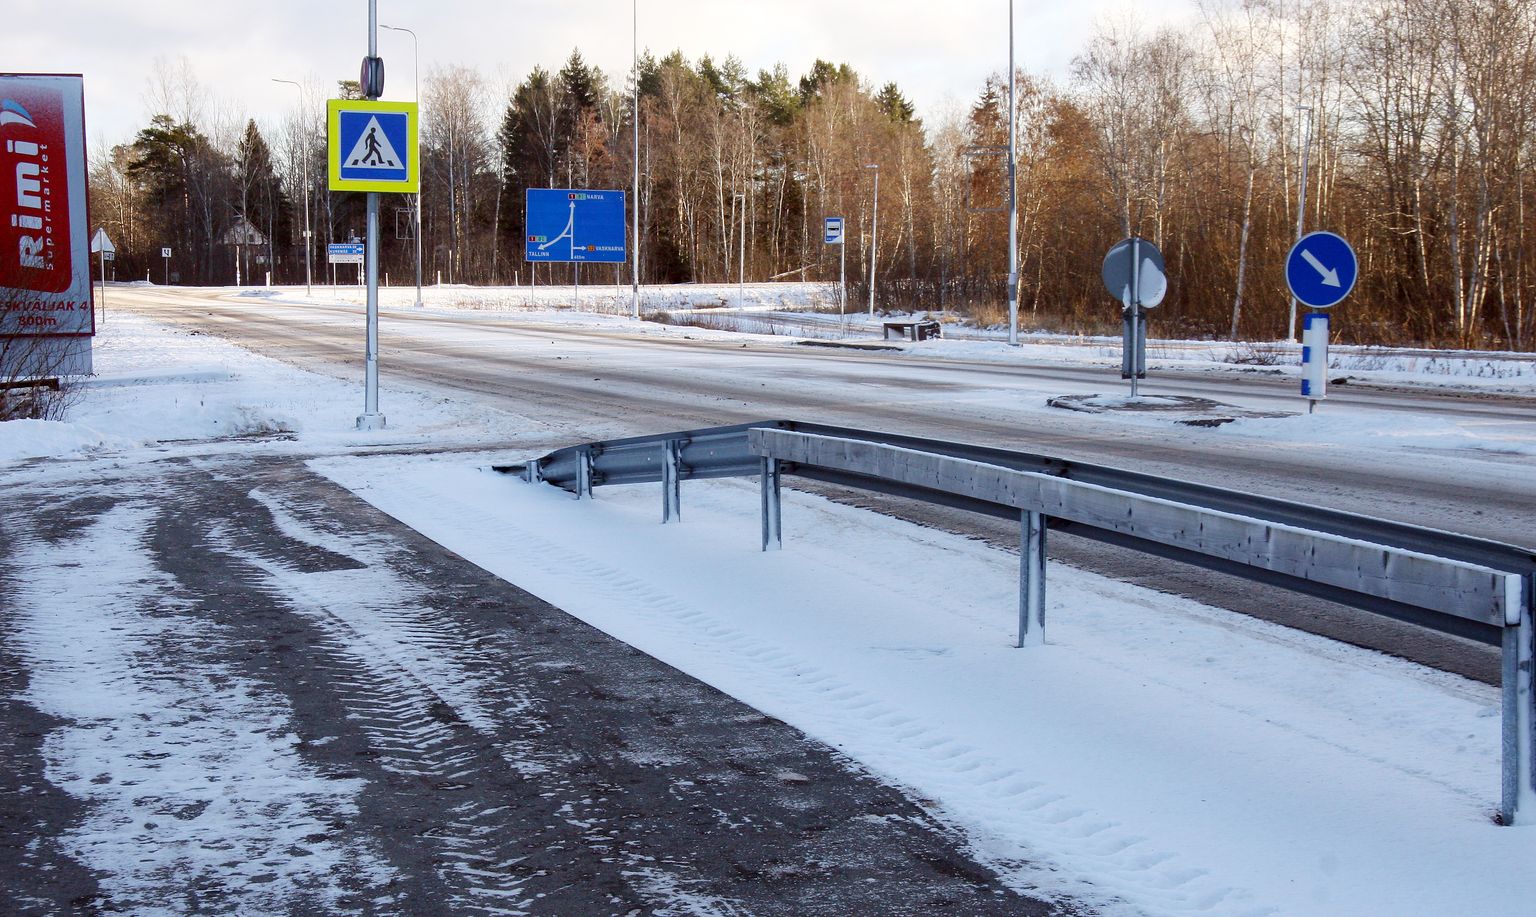 Jõhvis saab kavandatav kergliiklustee kokku Narva maantee olemasoleva kergliiklusteega, mis on praeguseks valmis ehitatud kesklinna poolt tulles kuni Jõhvi−Vasknarva maantee ristmikuni.